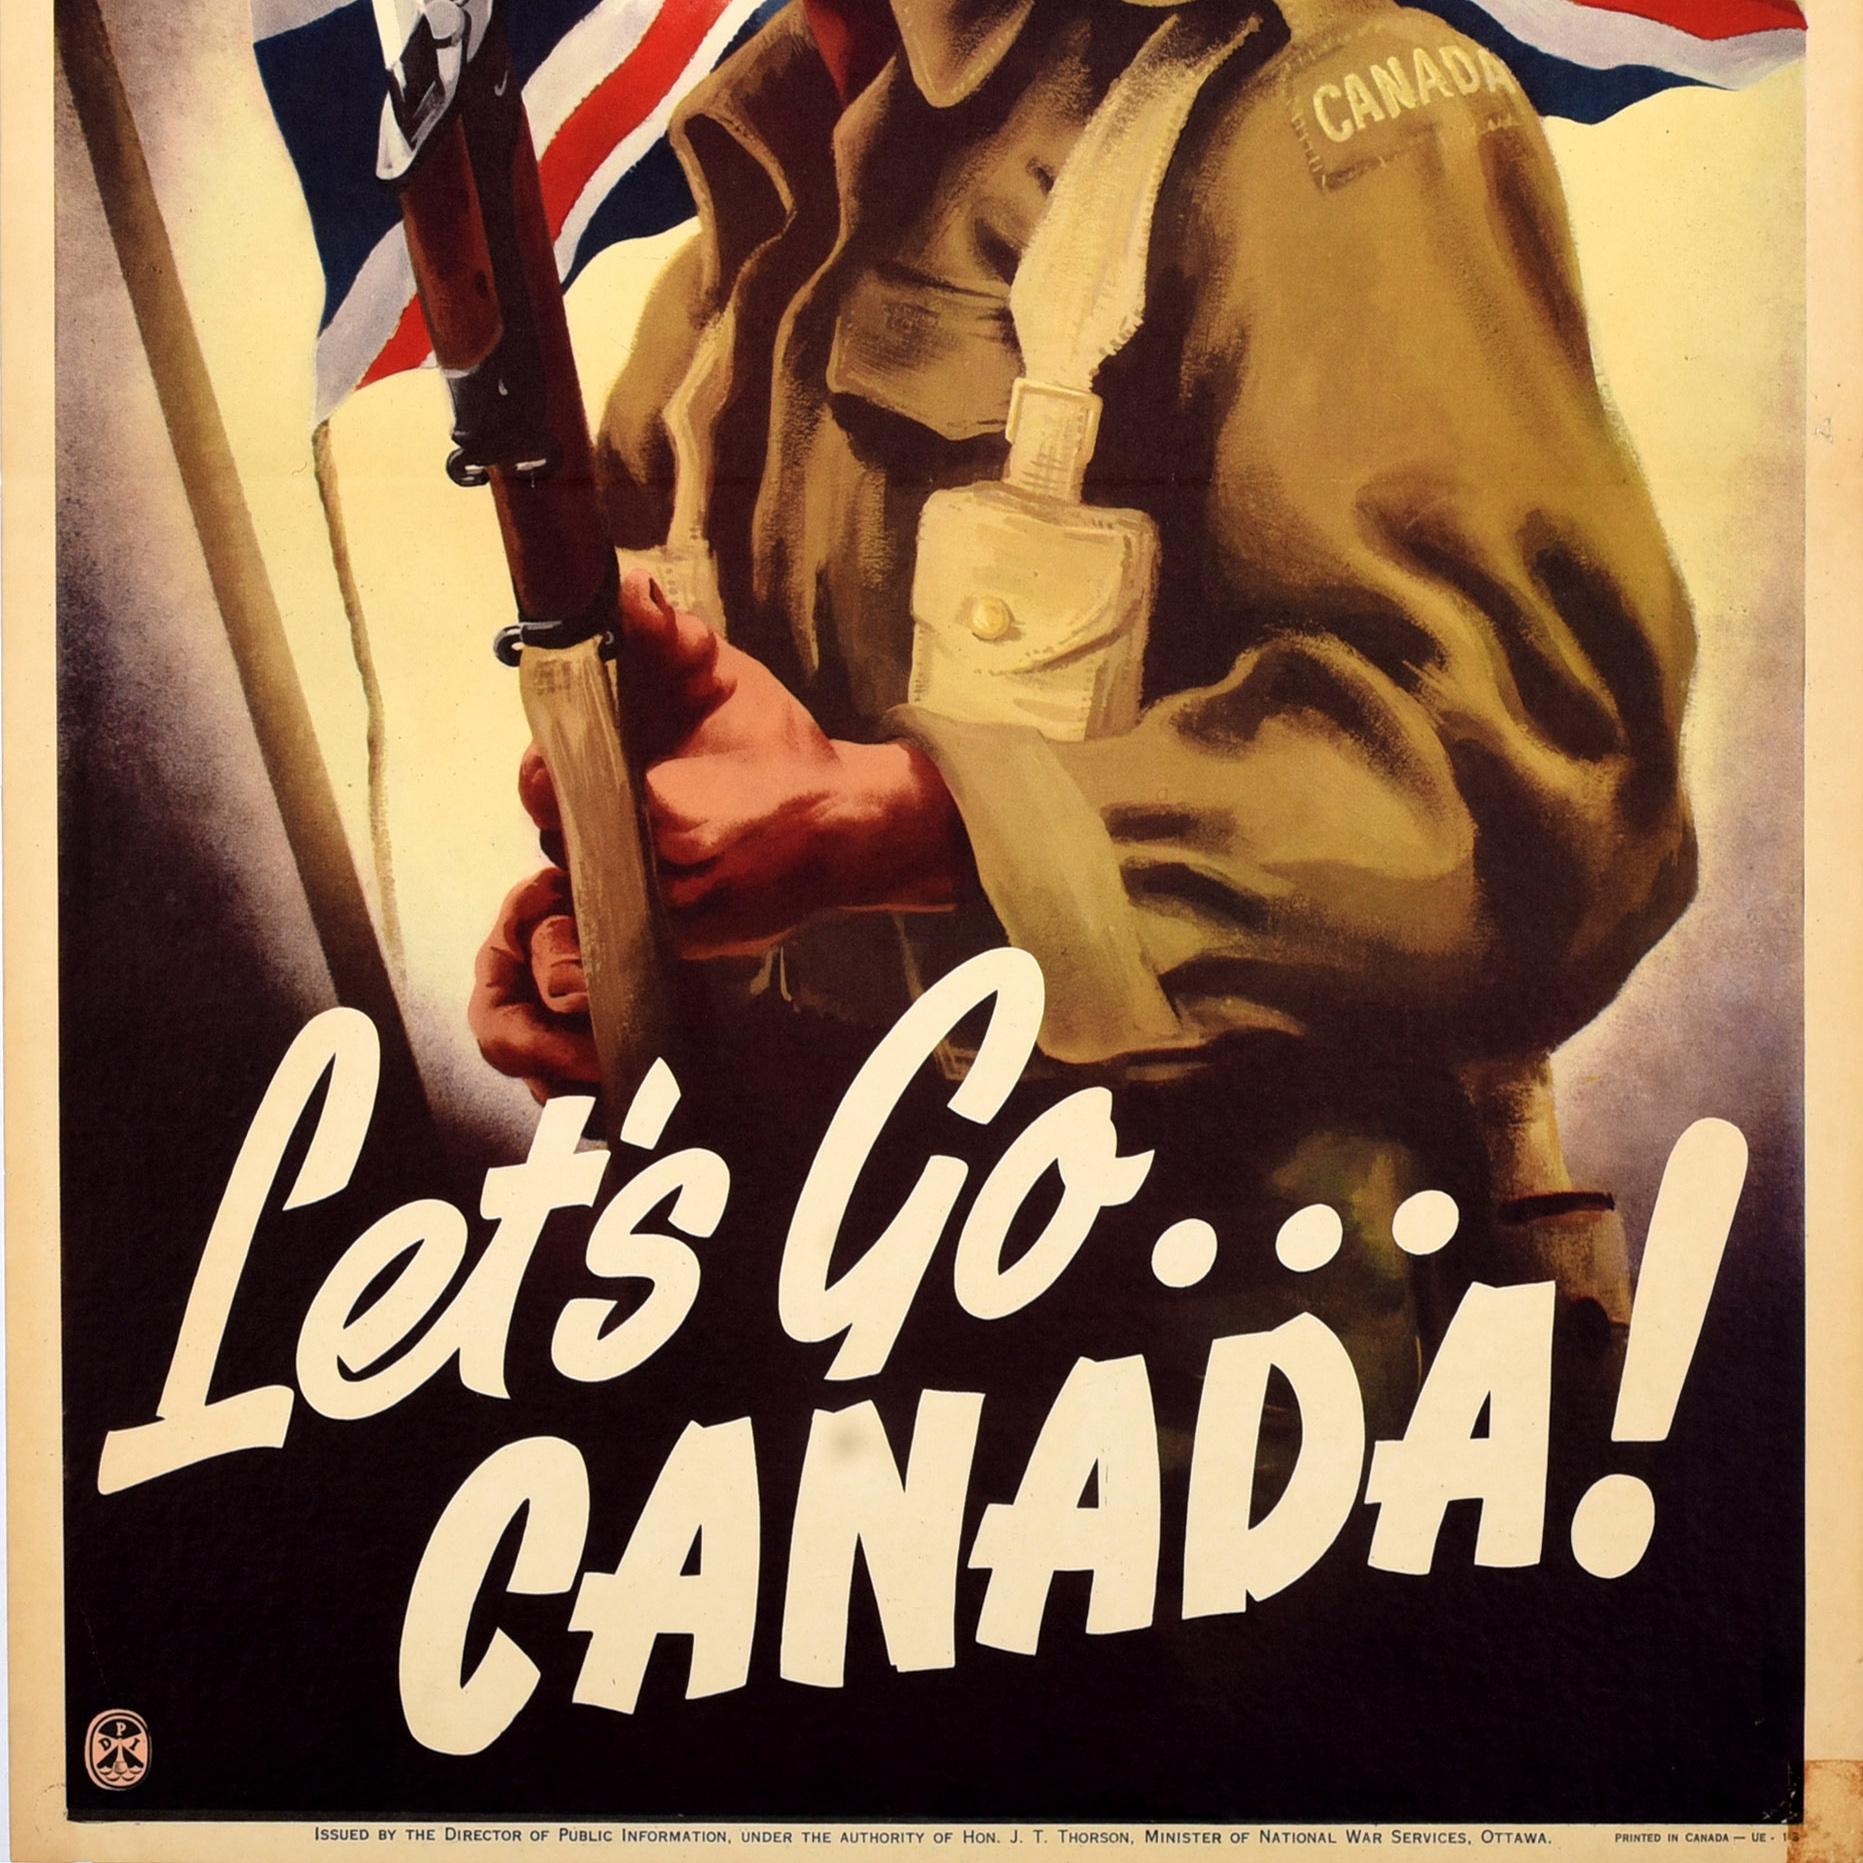 Original kanadisches Propagandaplakat für den Zweiten Weltkrieg - Let's Go... Kanada! - herausgegeben vom Direktor für Öffentlichkeitsarbeit unter der Autorität von Hon J.T Thorson Minister of National War Services Ottawa. Dynamisches Motiv, das